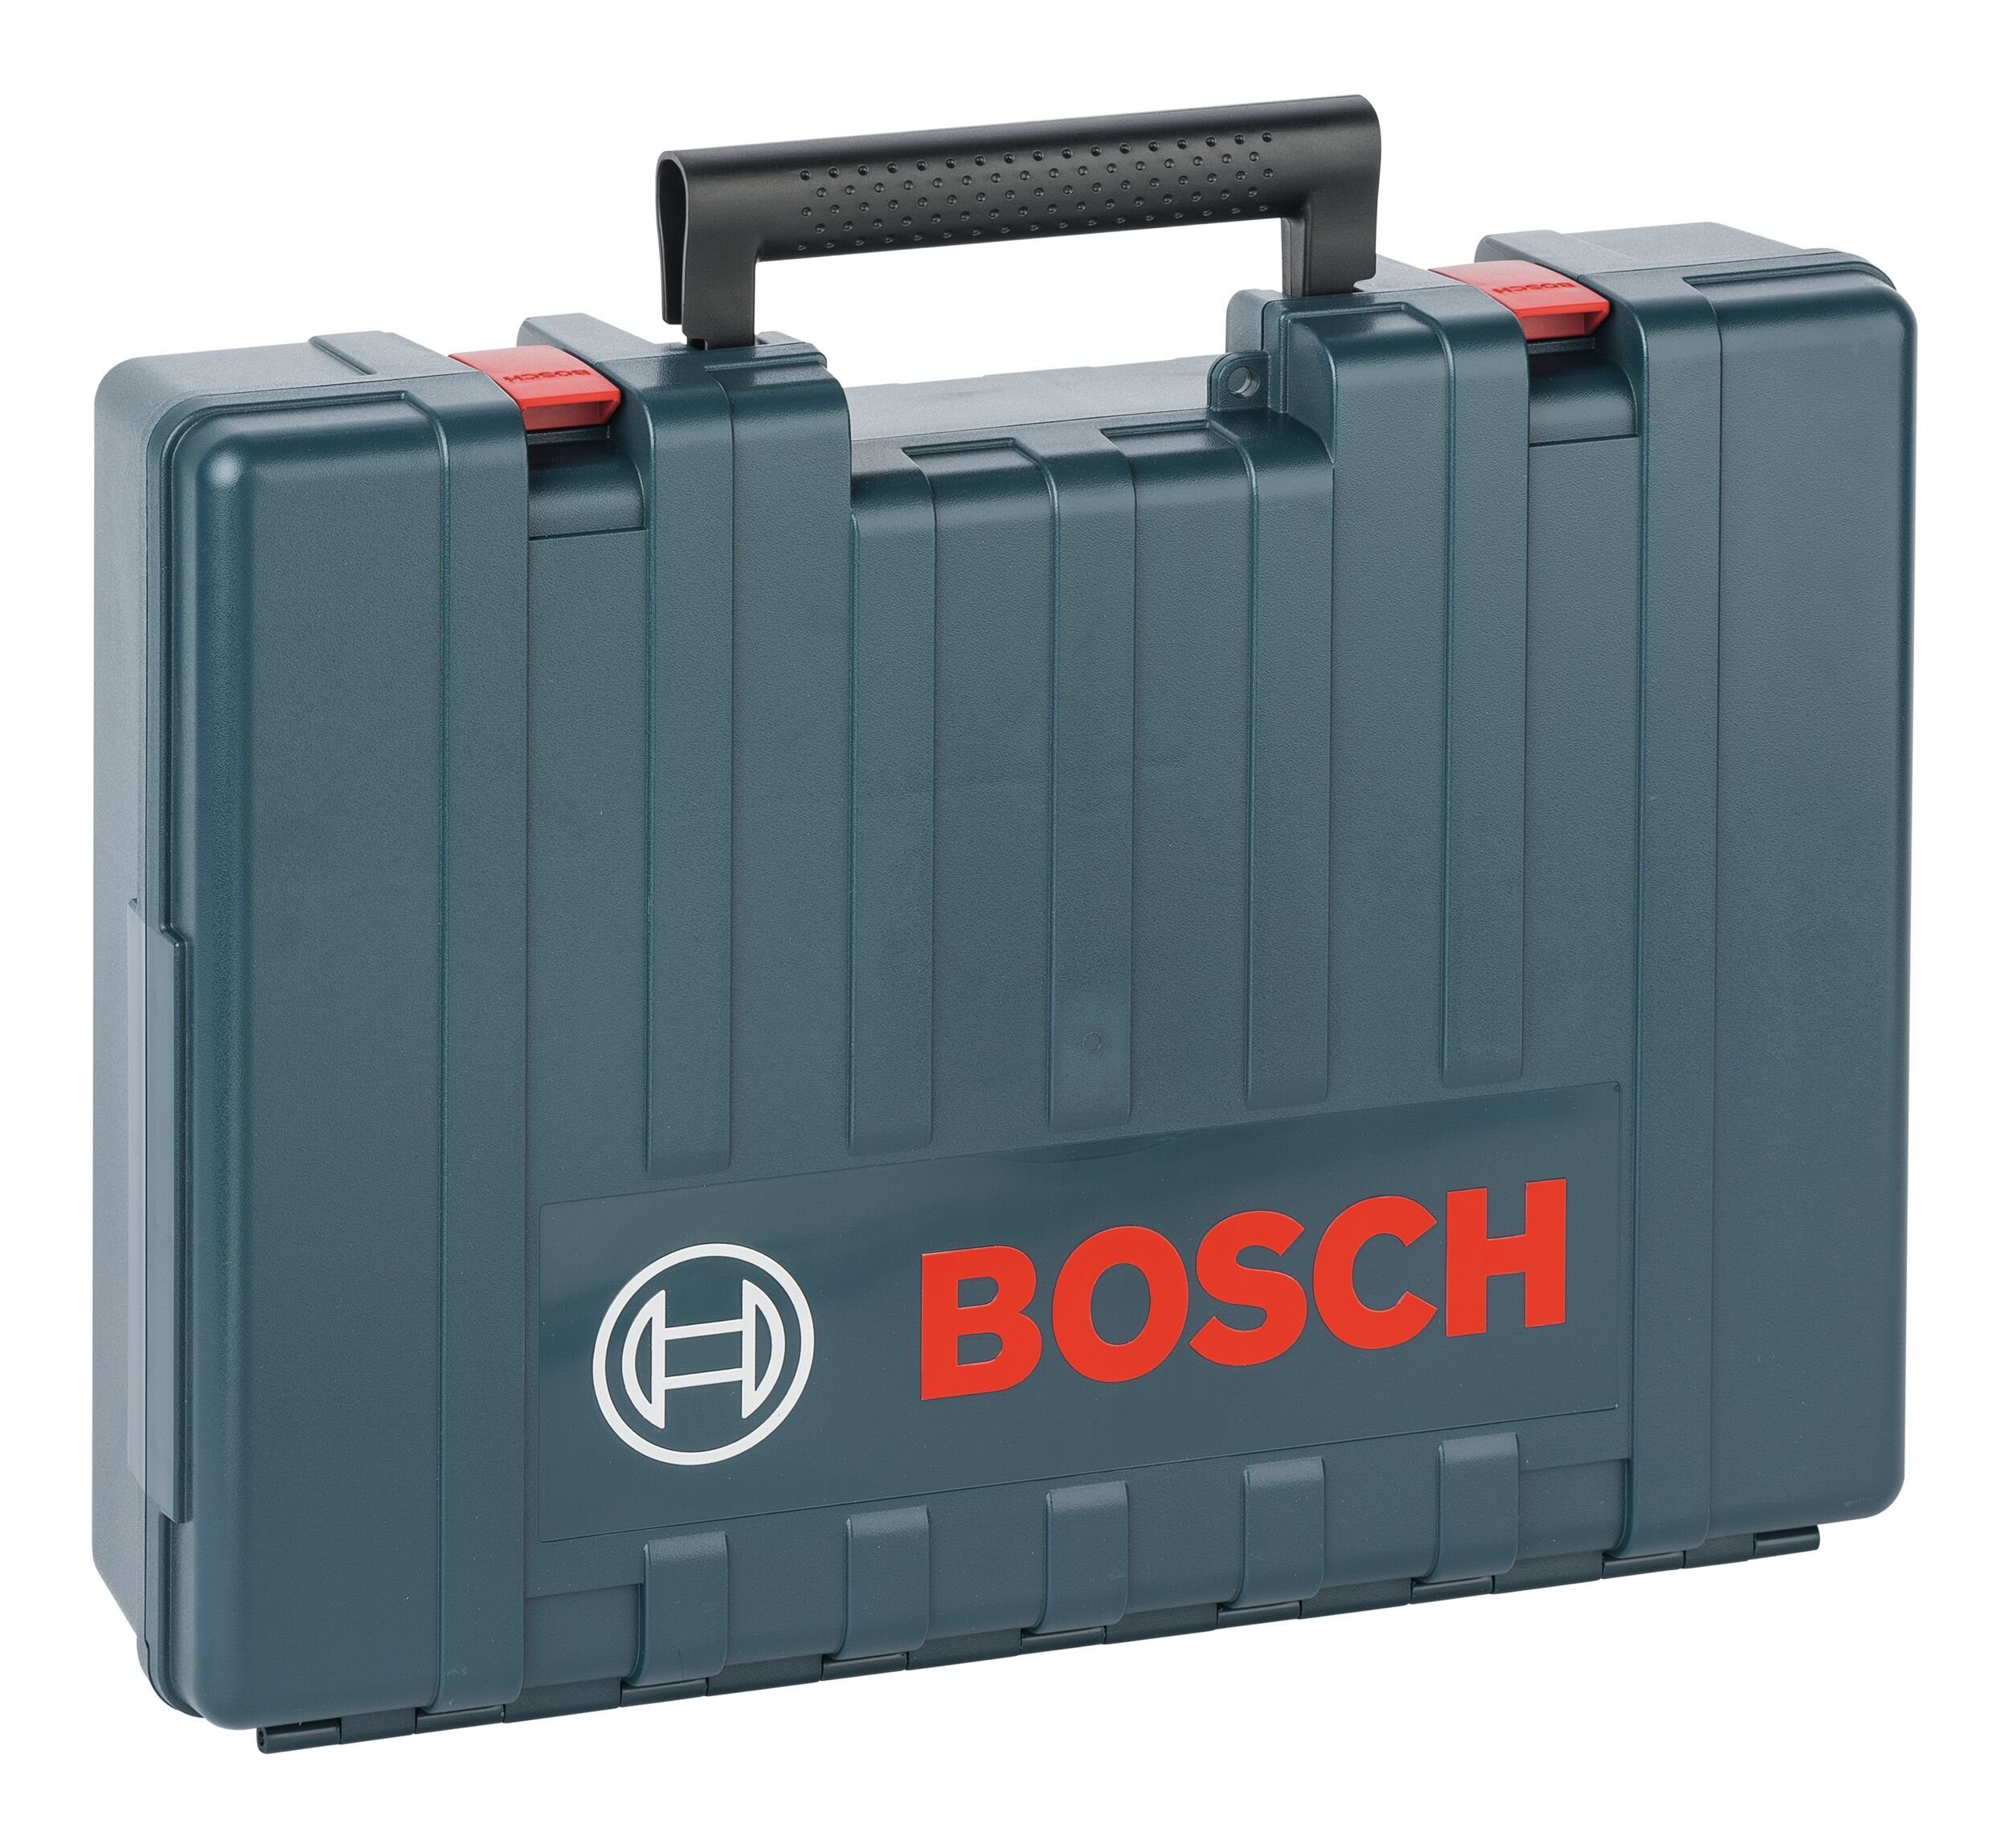 Bosch Home & Garden Werkzeugkoffer, 480 36 V-LI Akkugeräte GBH - für Kunststoffkoffer mm x 360 x 131 für